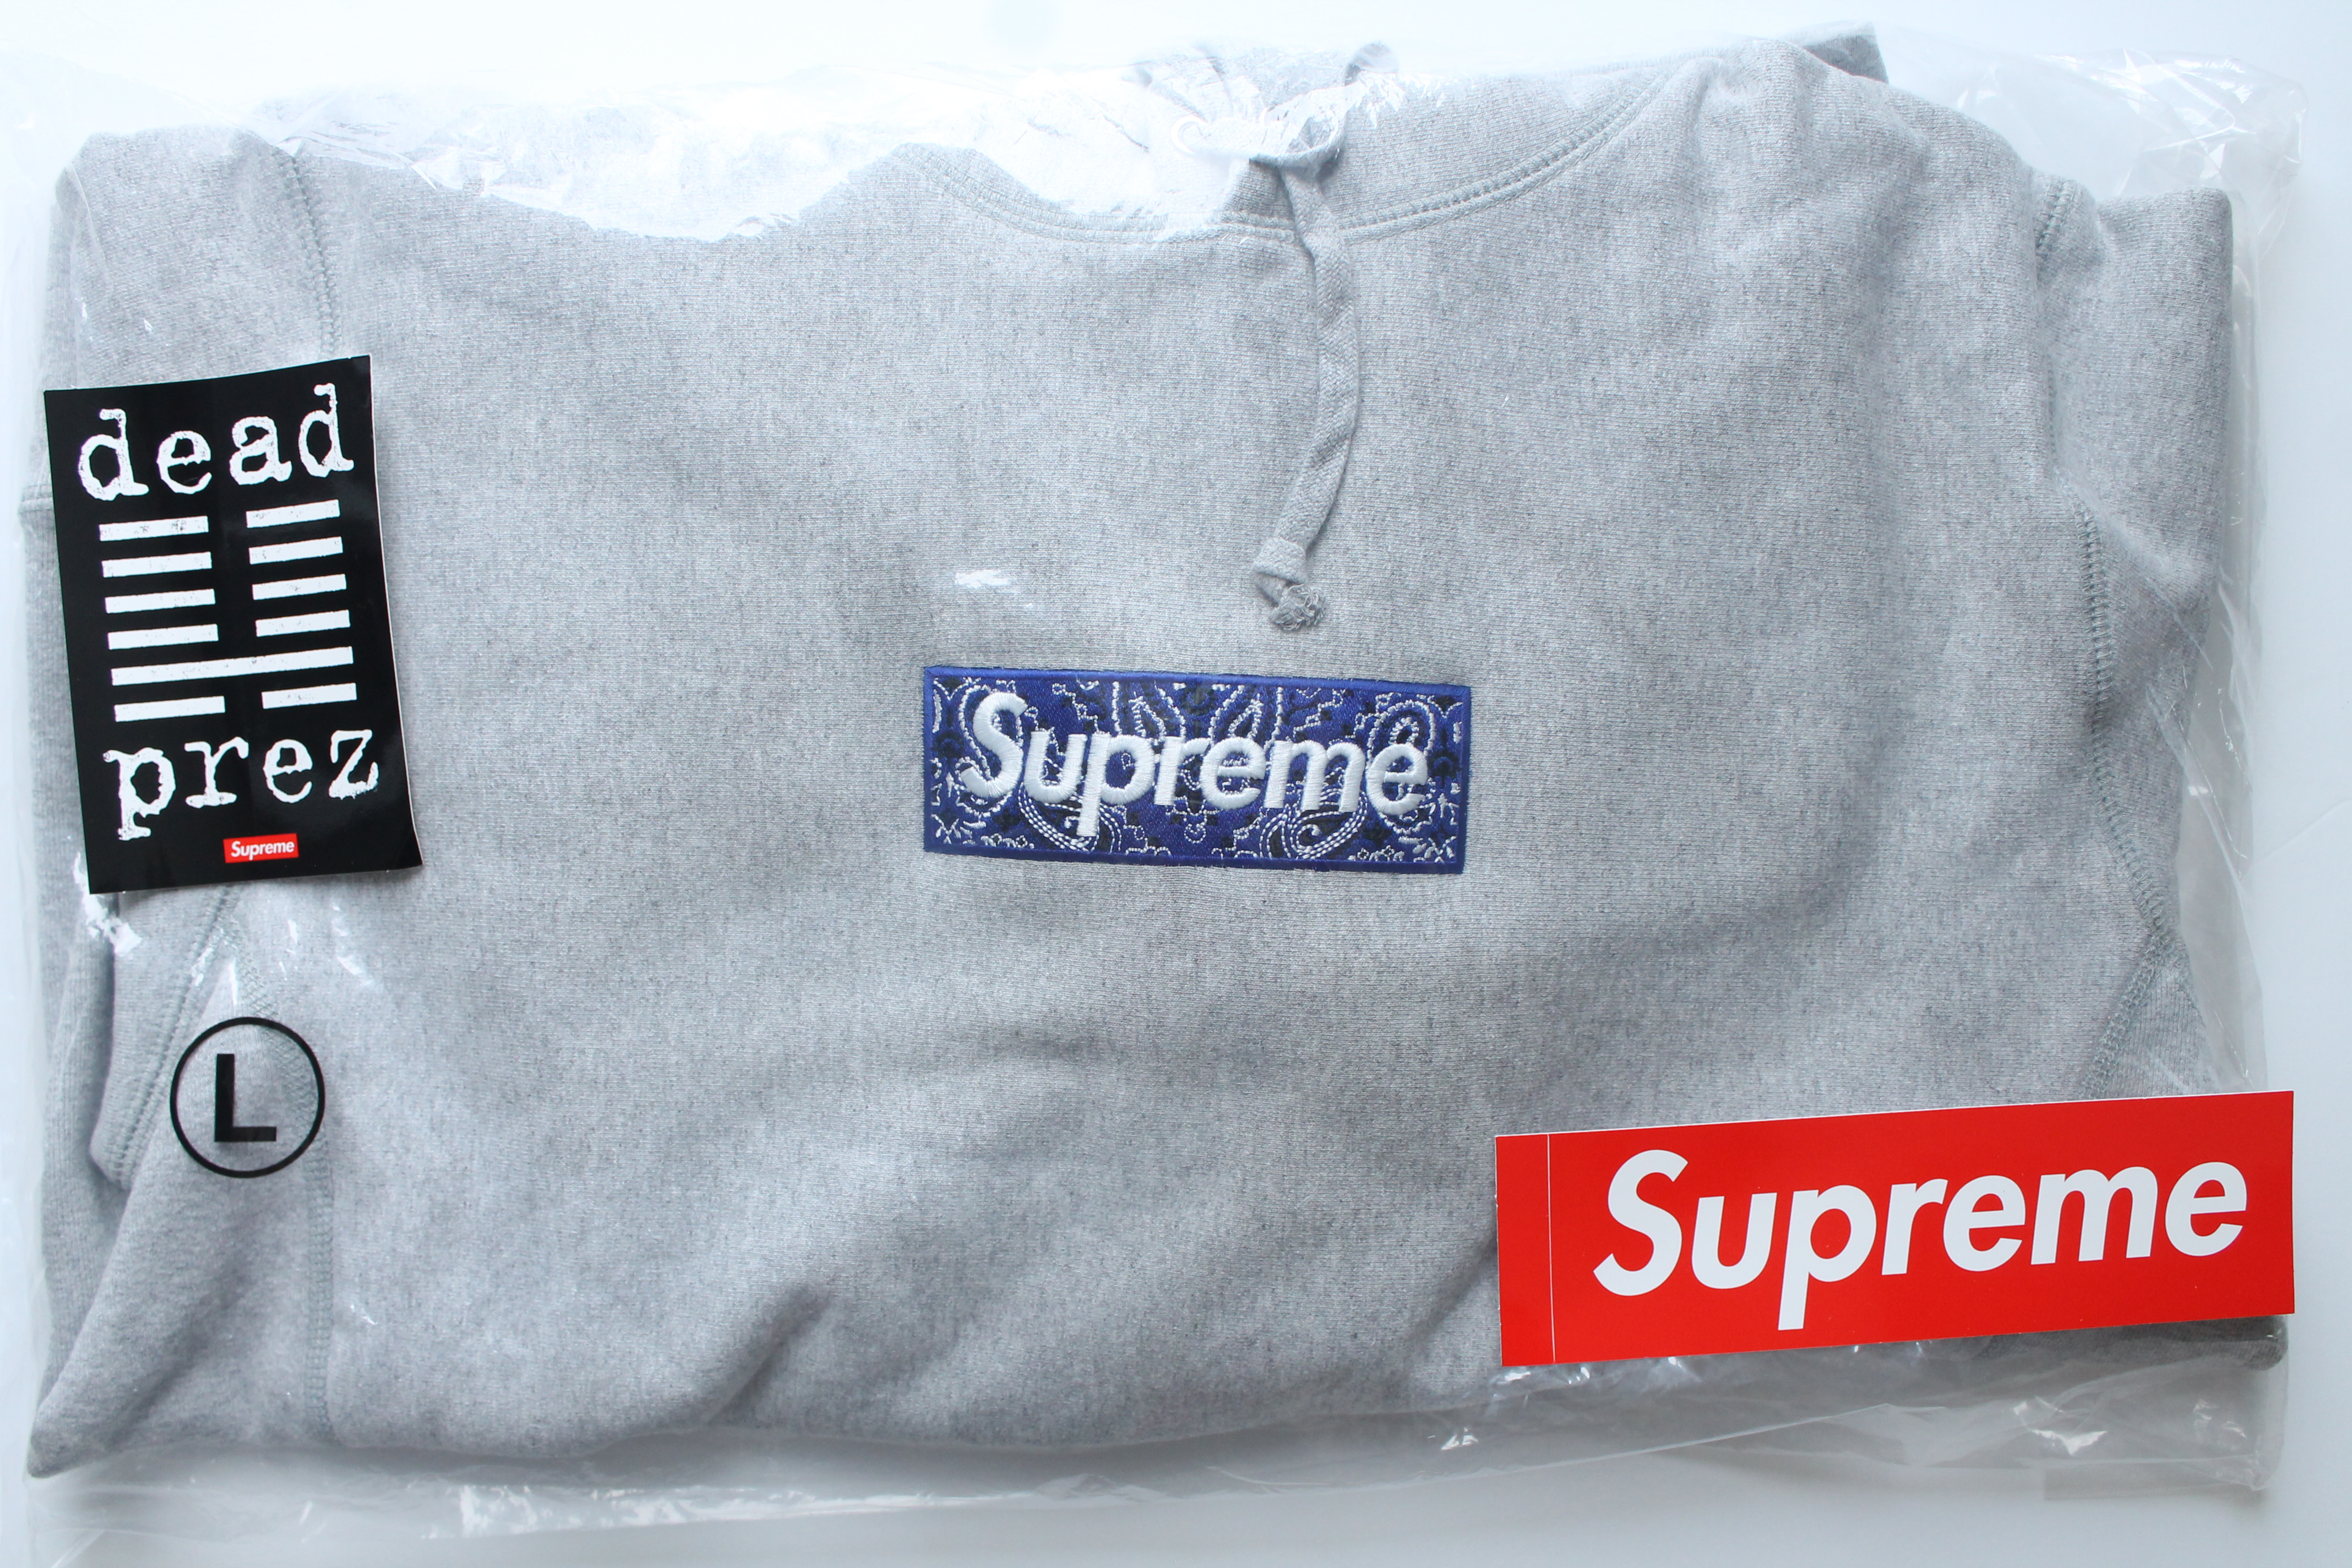 Supreme Bandana Box Logo Hooded Sweatshirt – Grey